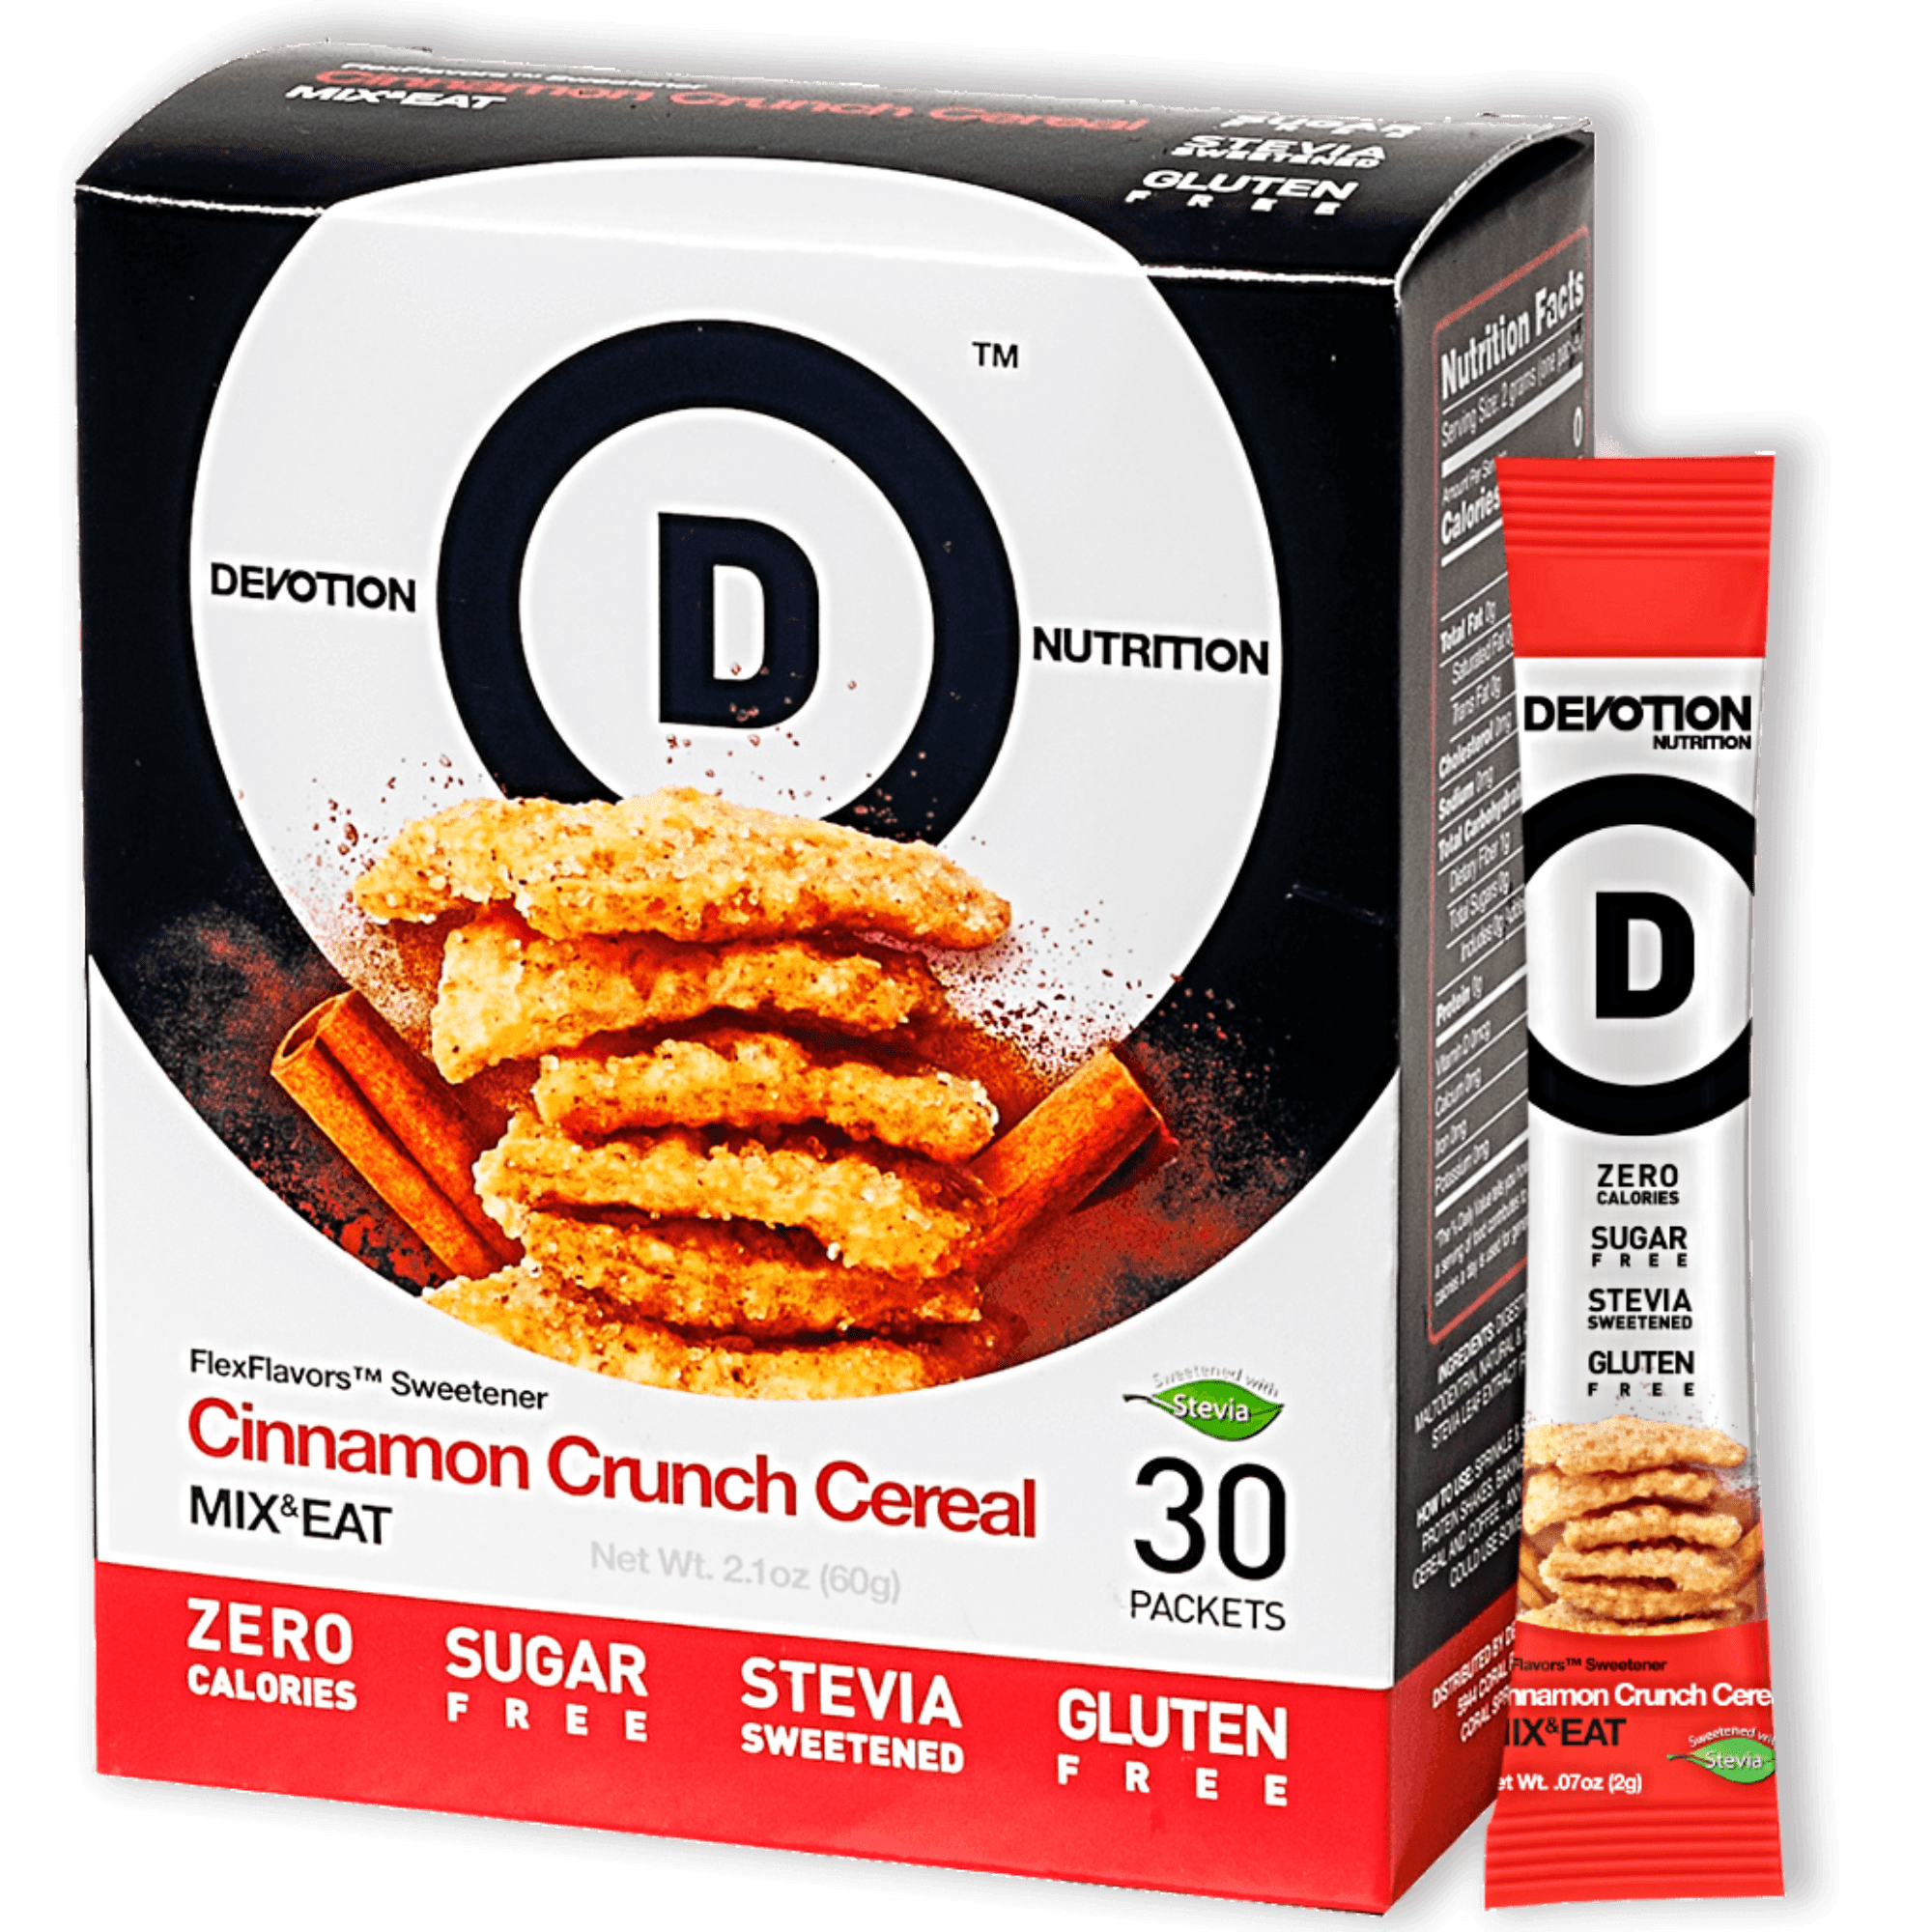 Cinnamon Crunch Cereal Flex Flavor